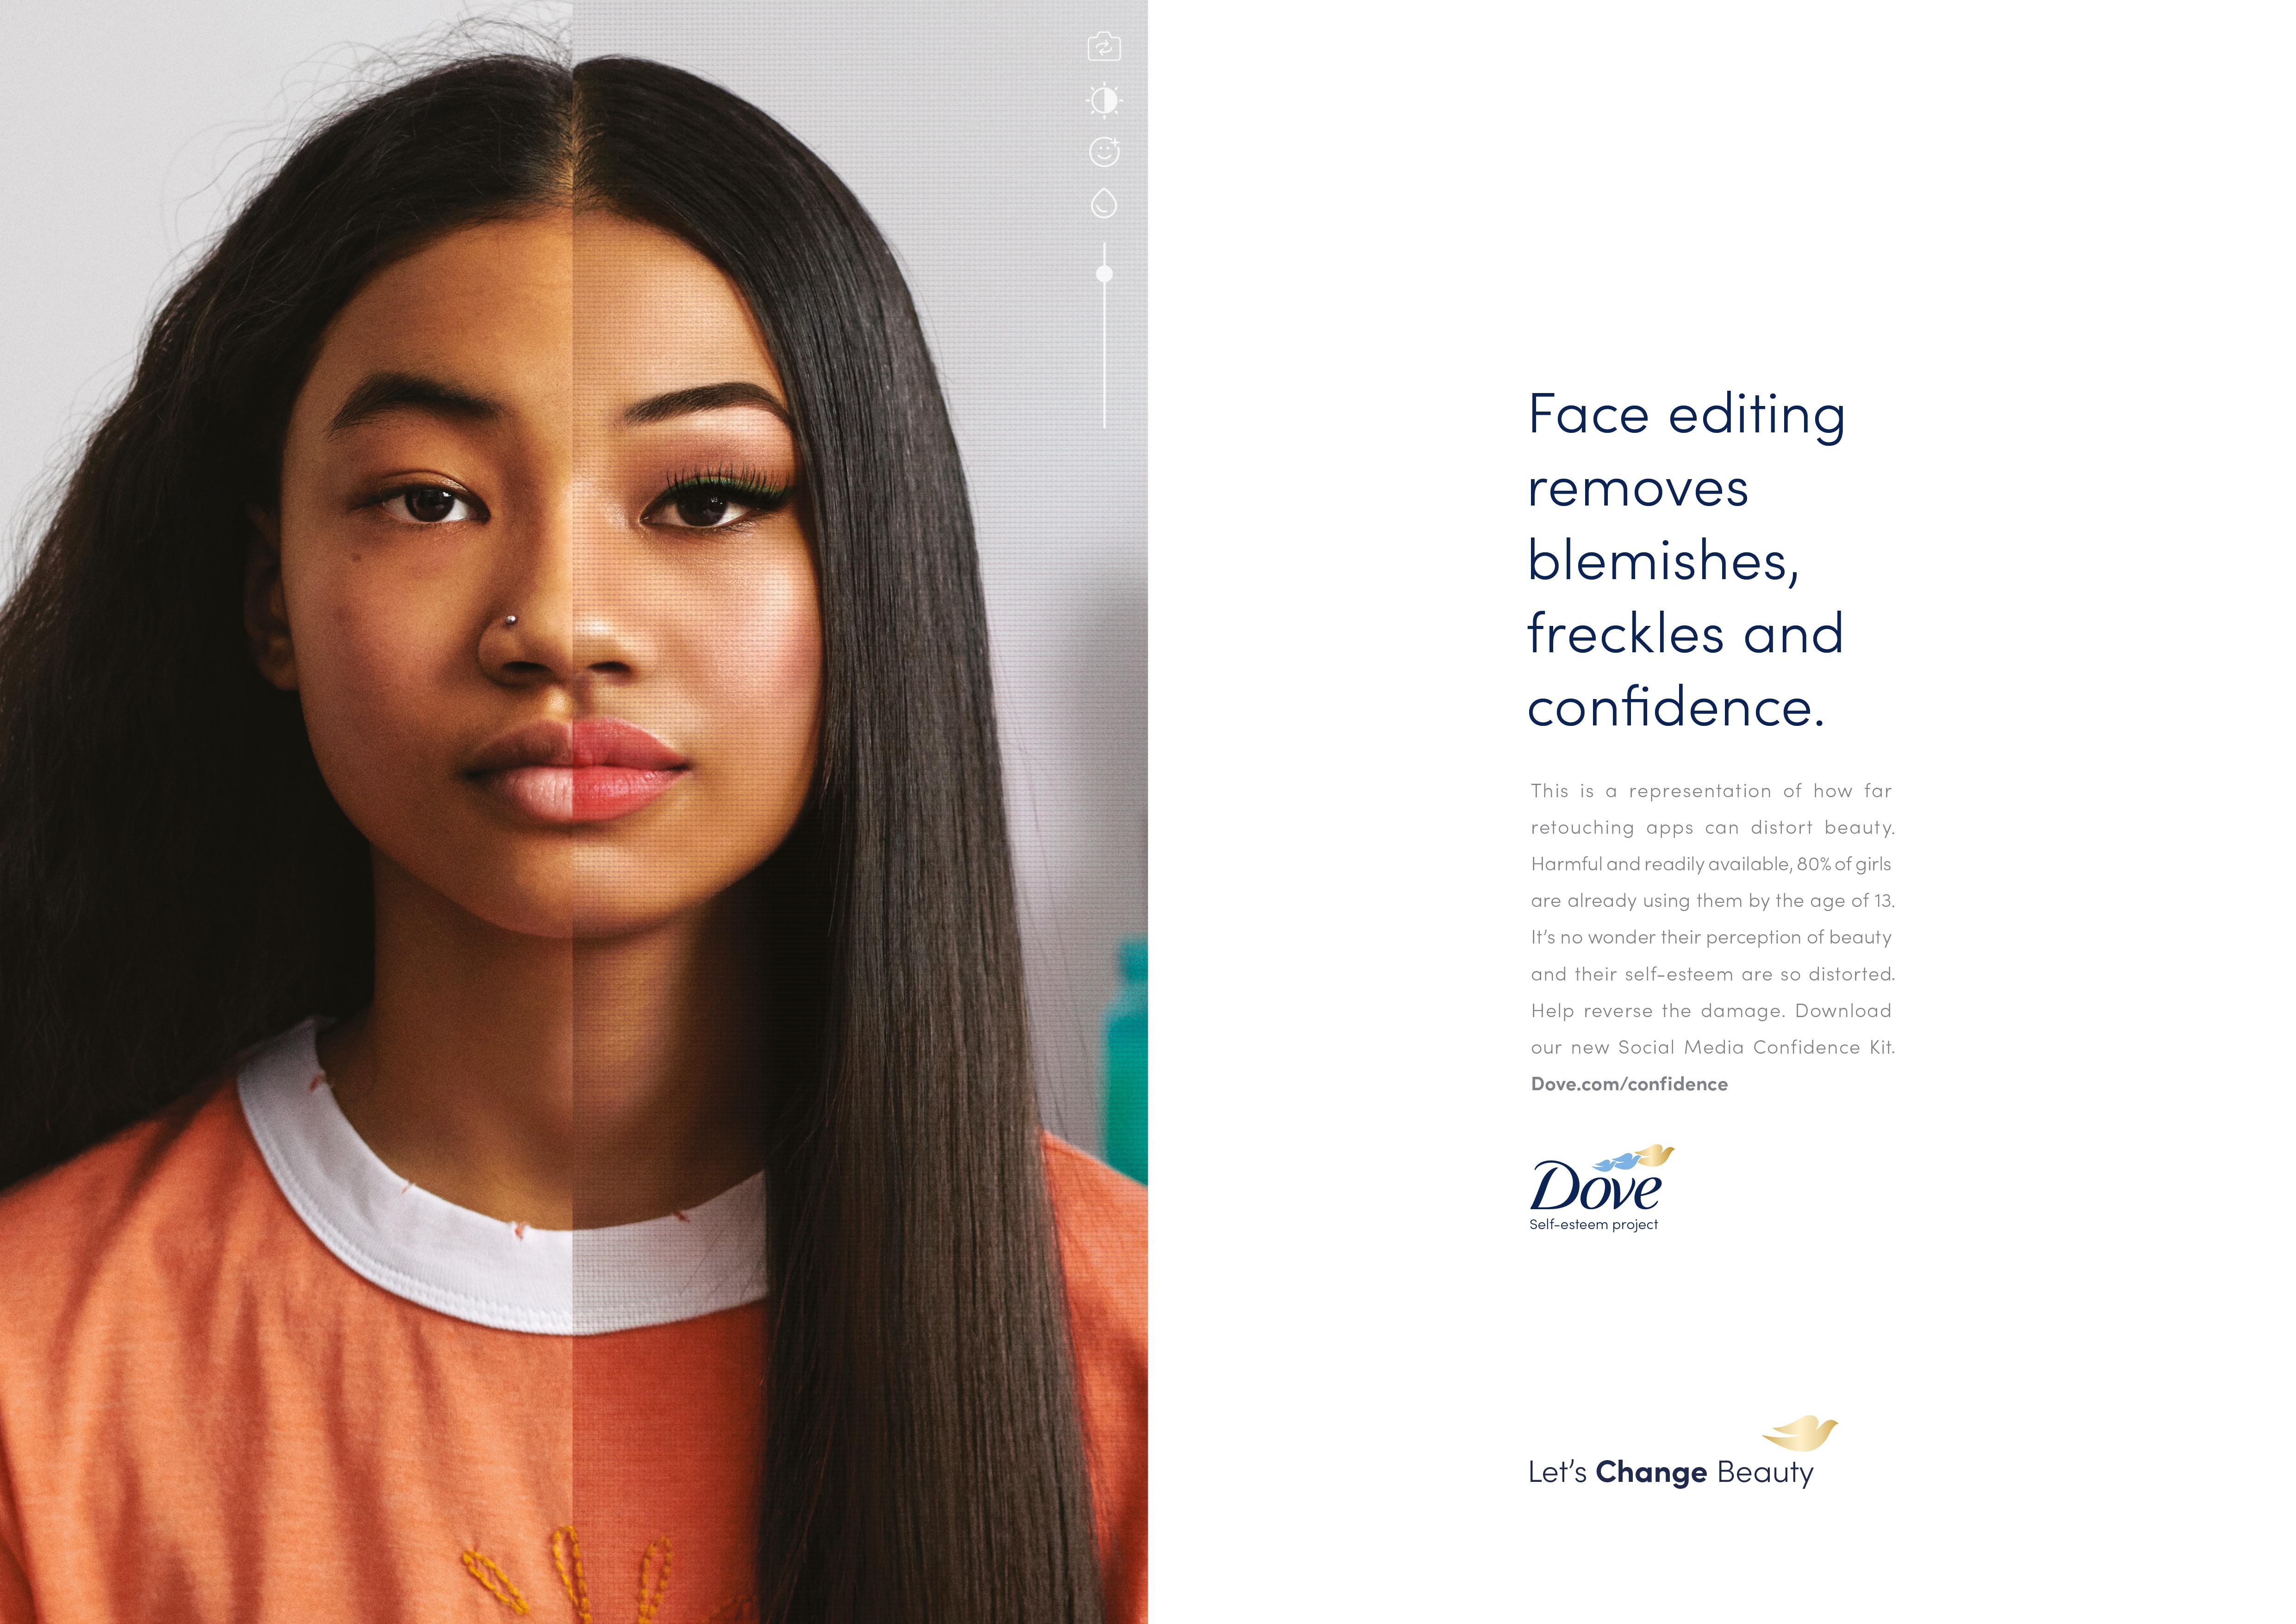 Campanha publicitária da Dove alerta para excesso de uso de filtros por meninas (Foto: OGILVY UK)